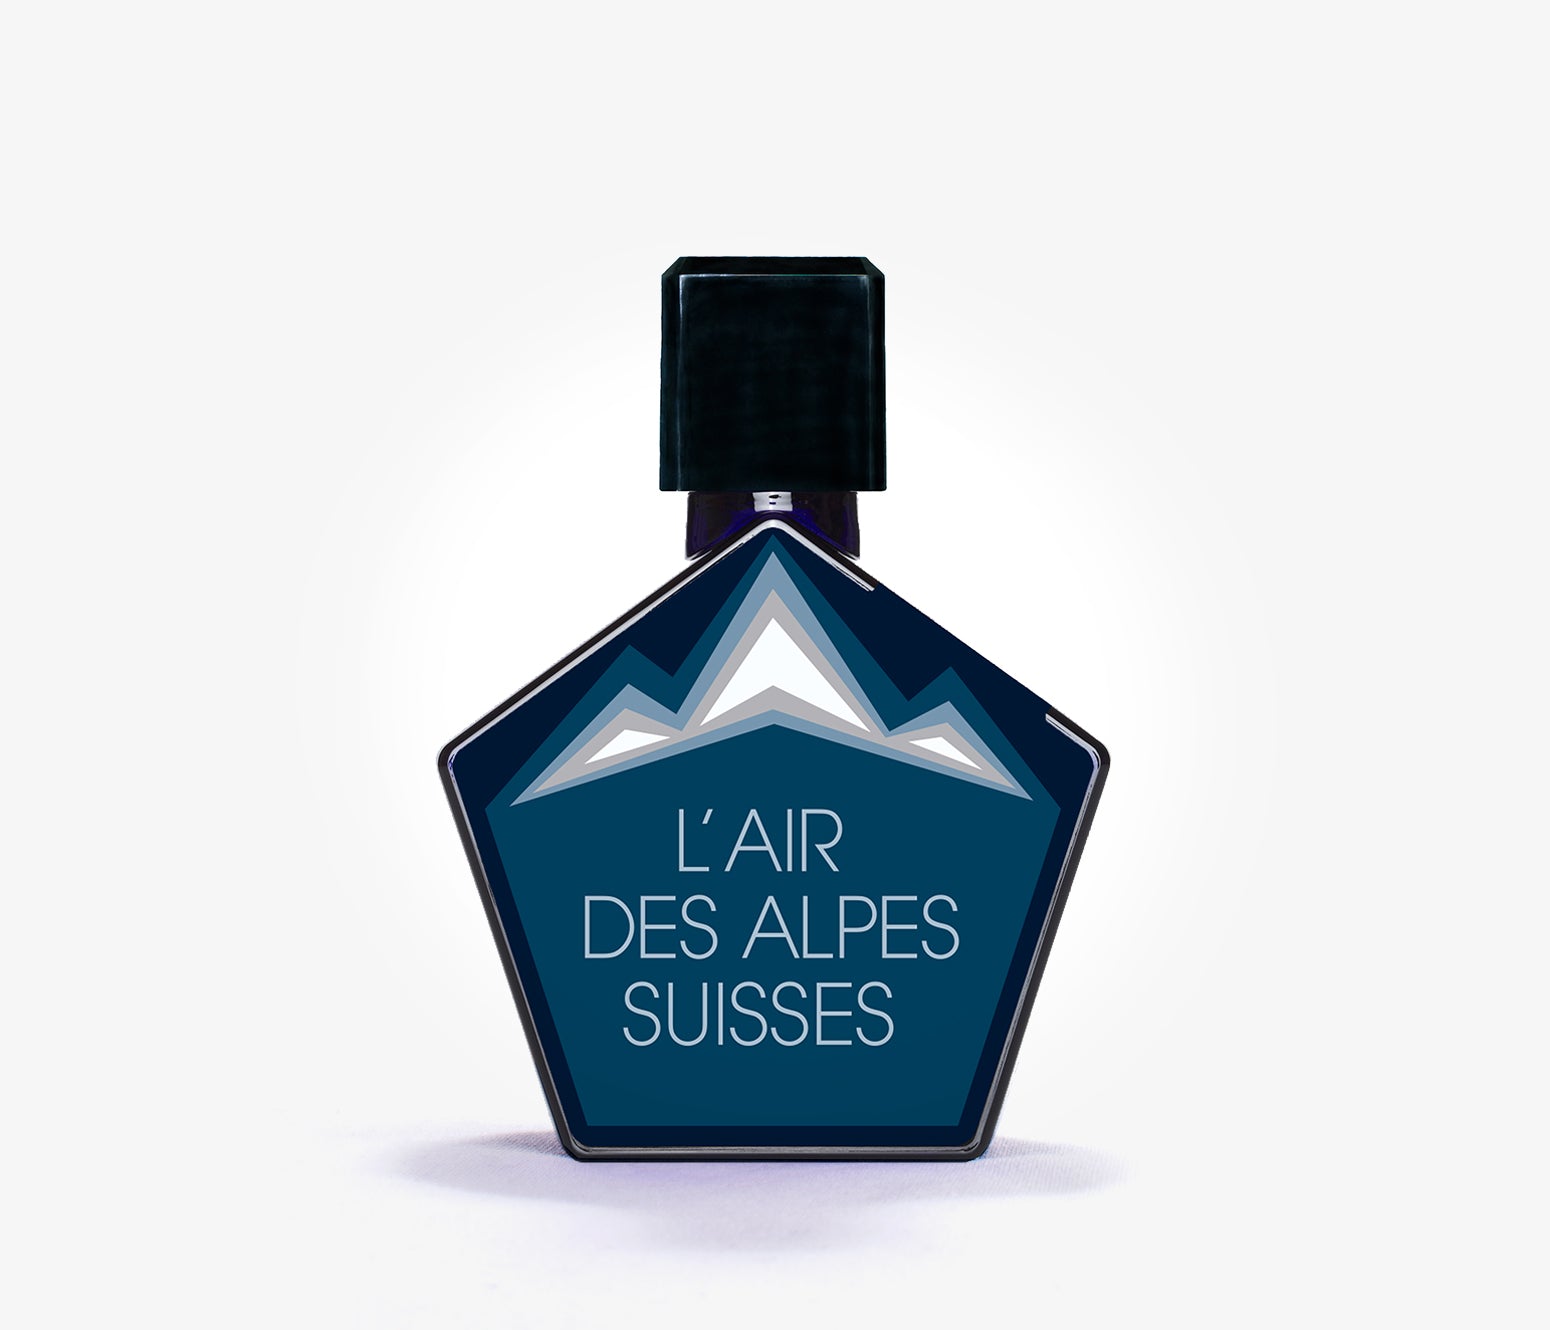 Tauer Perfumes - L'Air des Alpes Suisses - 50ml - ZBX9118 - product image - Fragrance - Les Senteurs